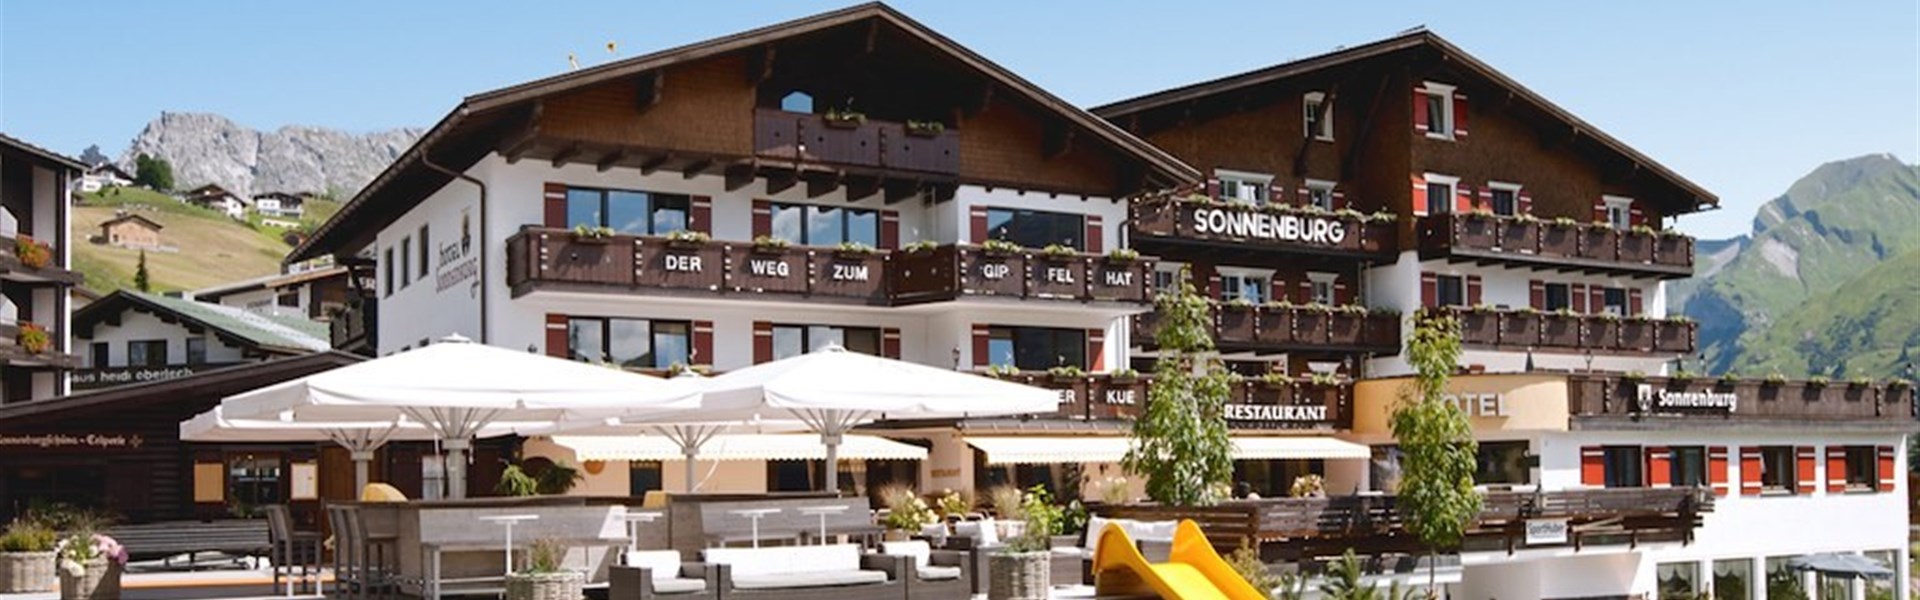 Hotel Sonnenburg (S) - 